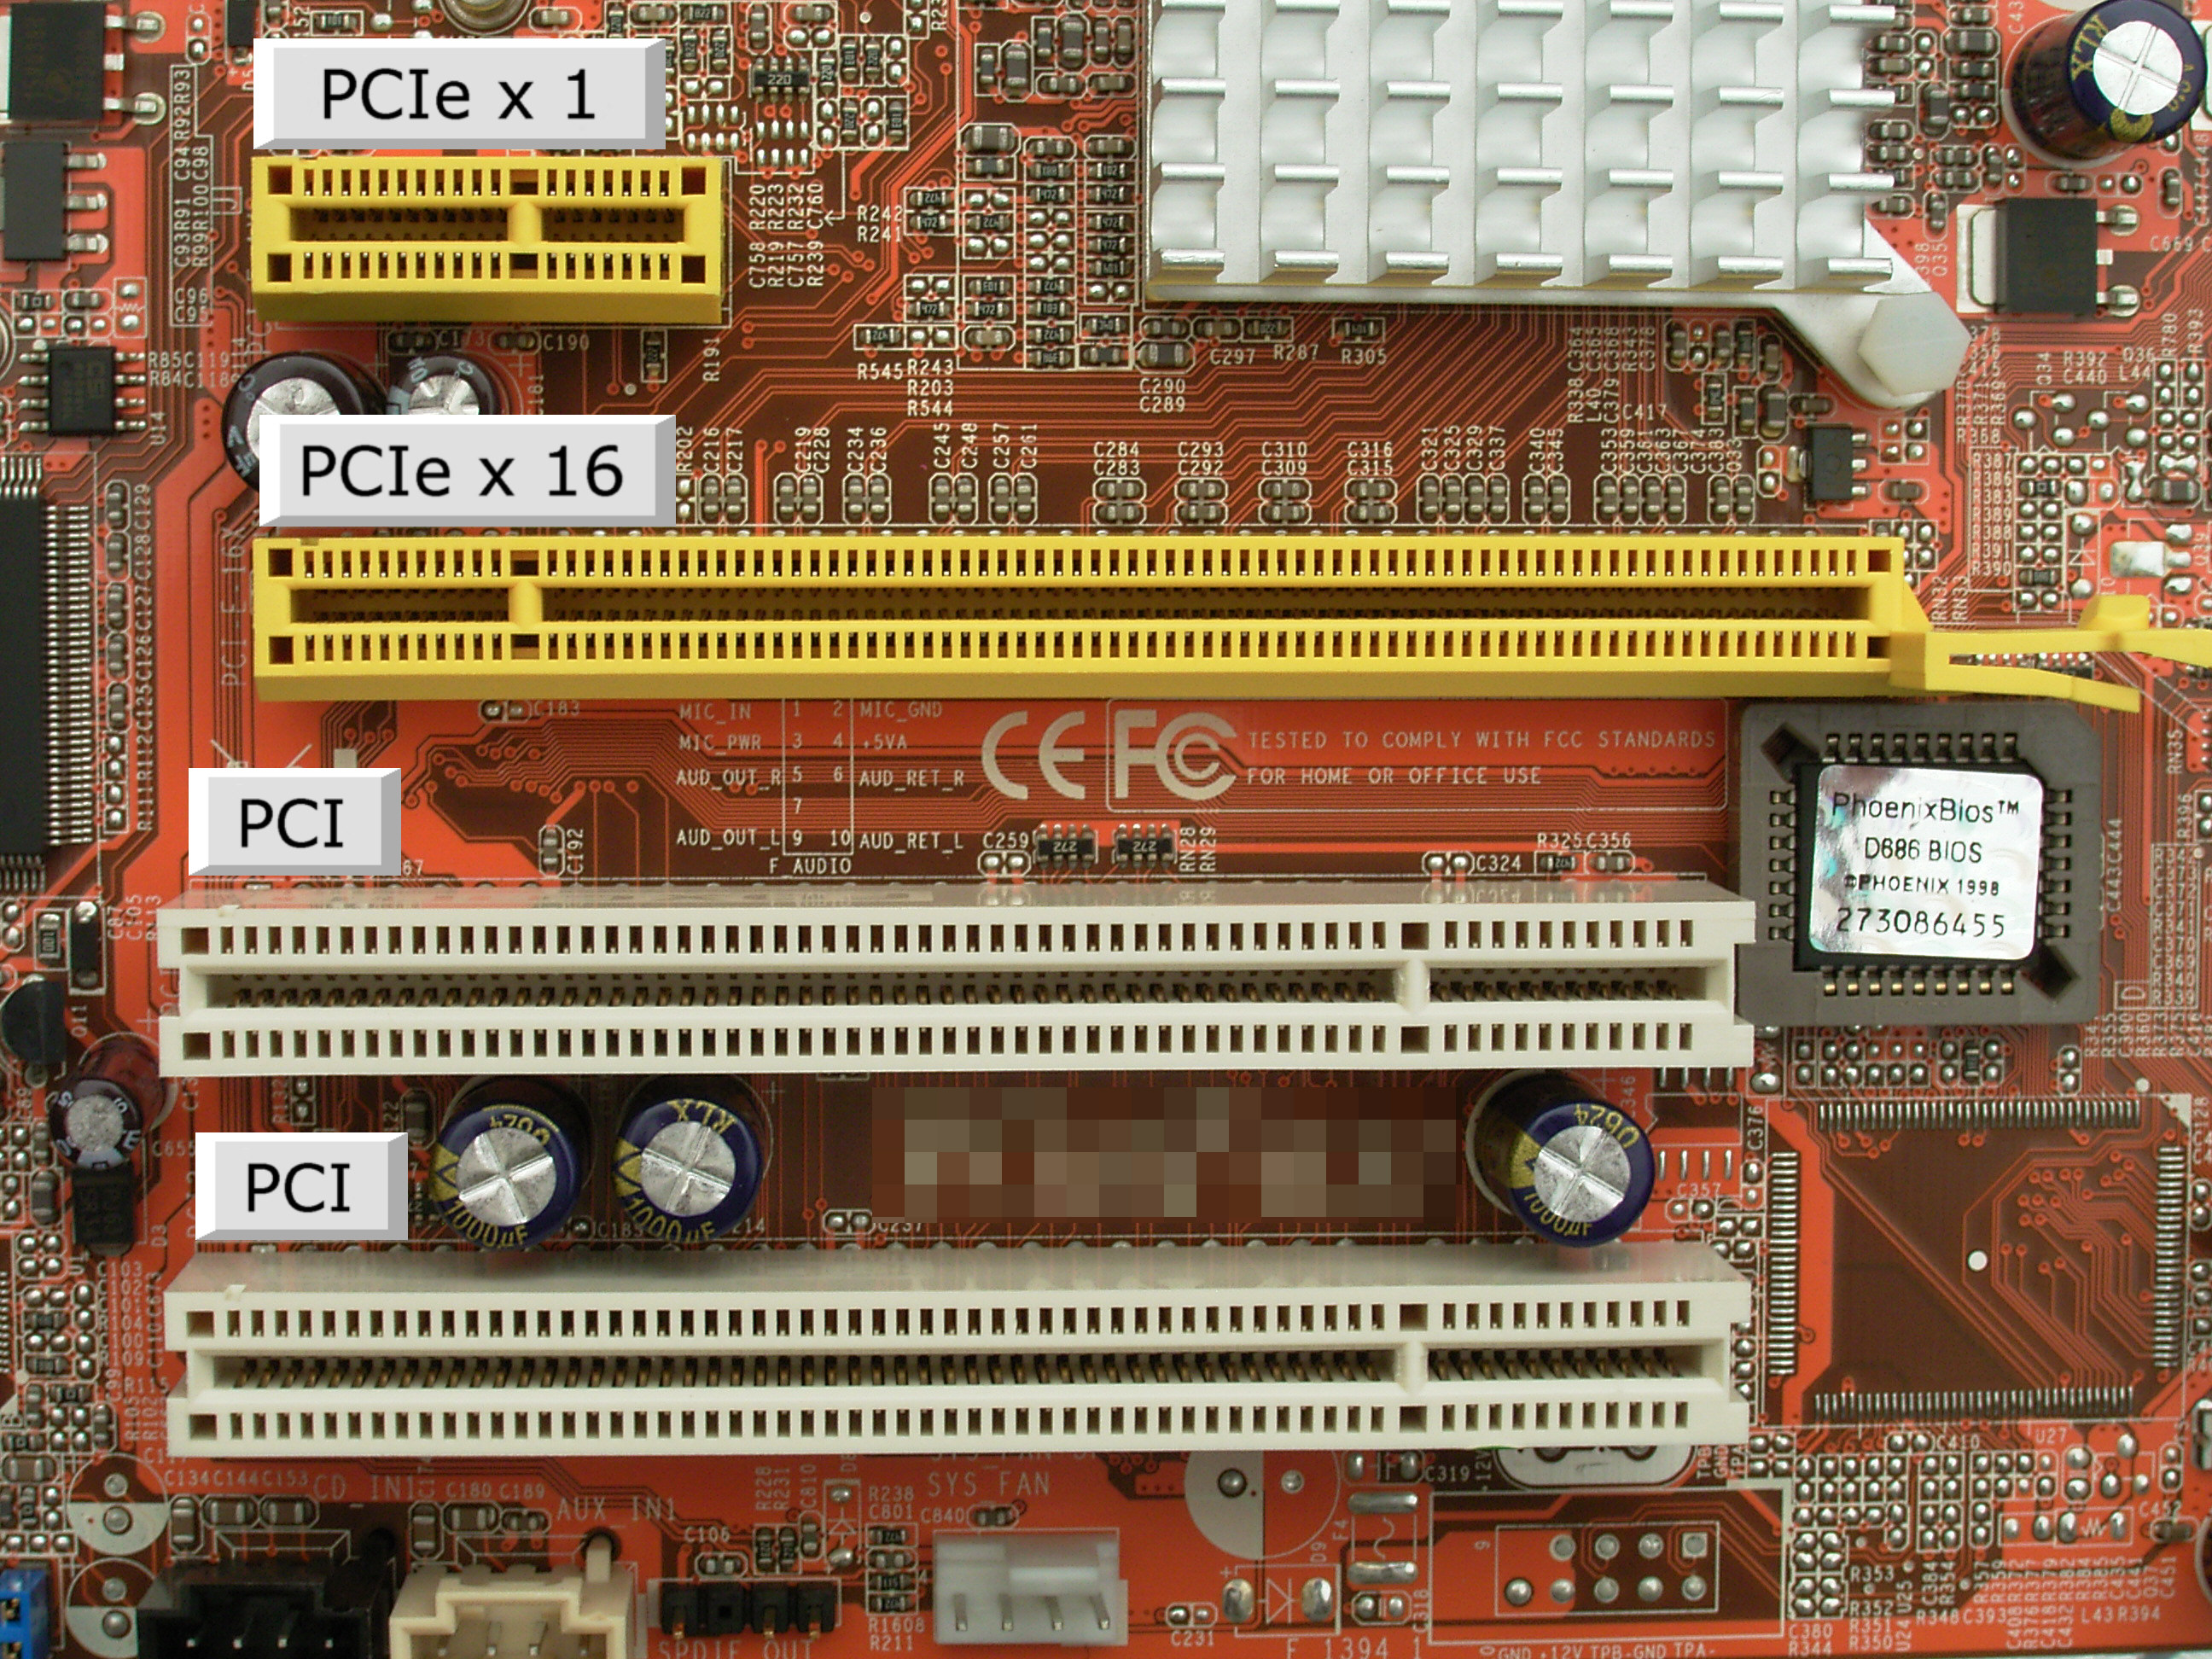 Abbildung PCI und PCI Express im Vergleich Lizenz: GNU-FDL 1.2  bzw. Creative Commons-Lizenz Namensnennung-Weitergabe unter gleichen Bedingungen 2.0 Deutschland  Quelle: Wikimedia